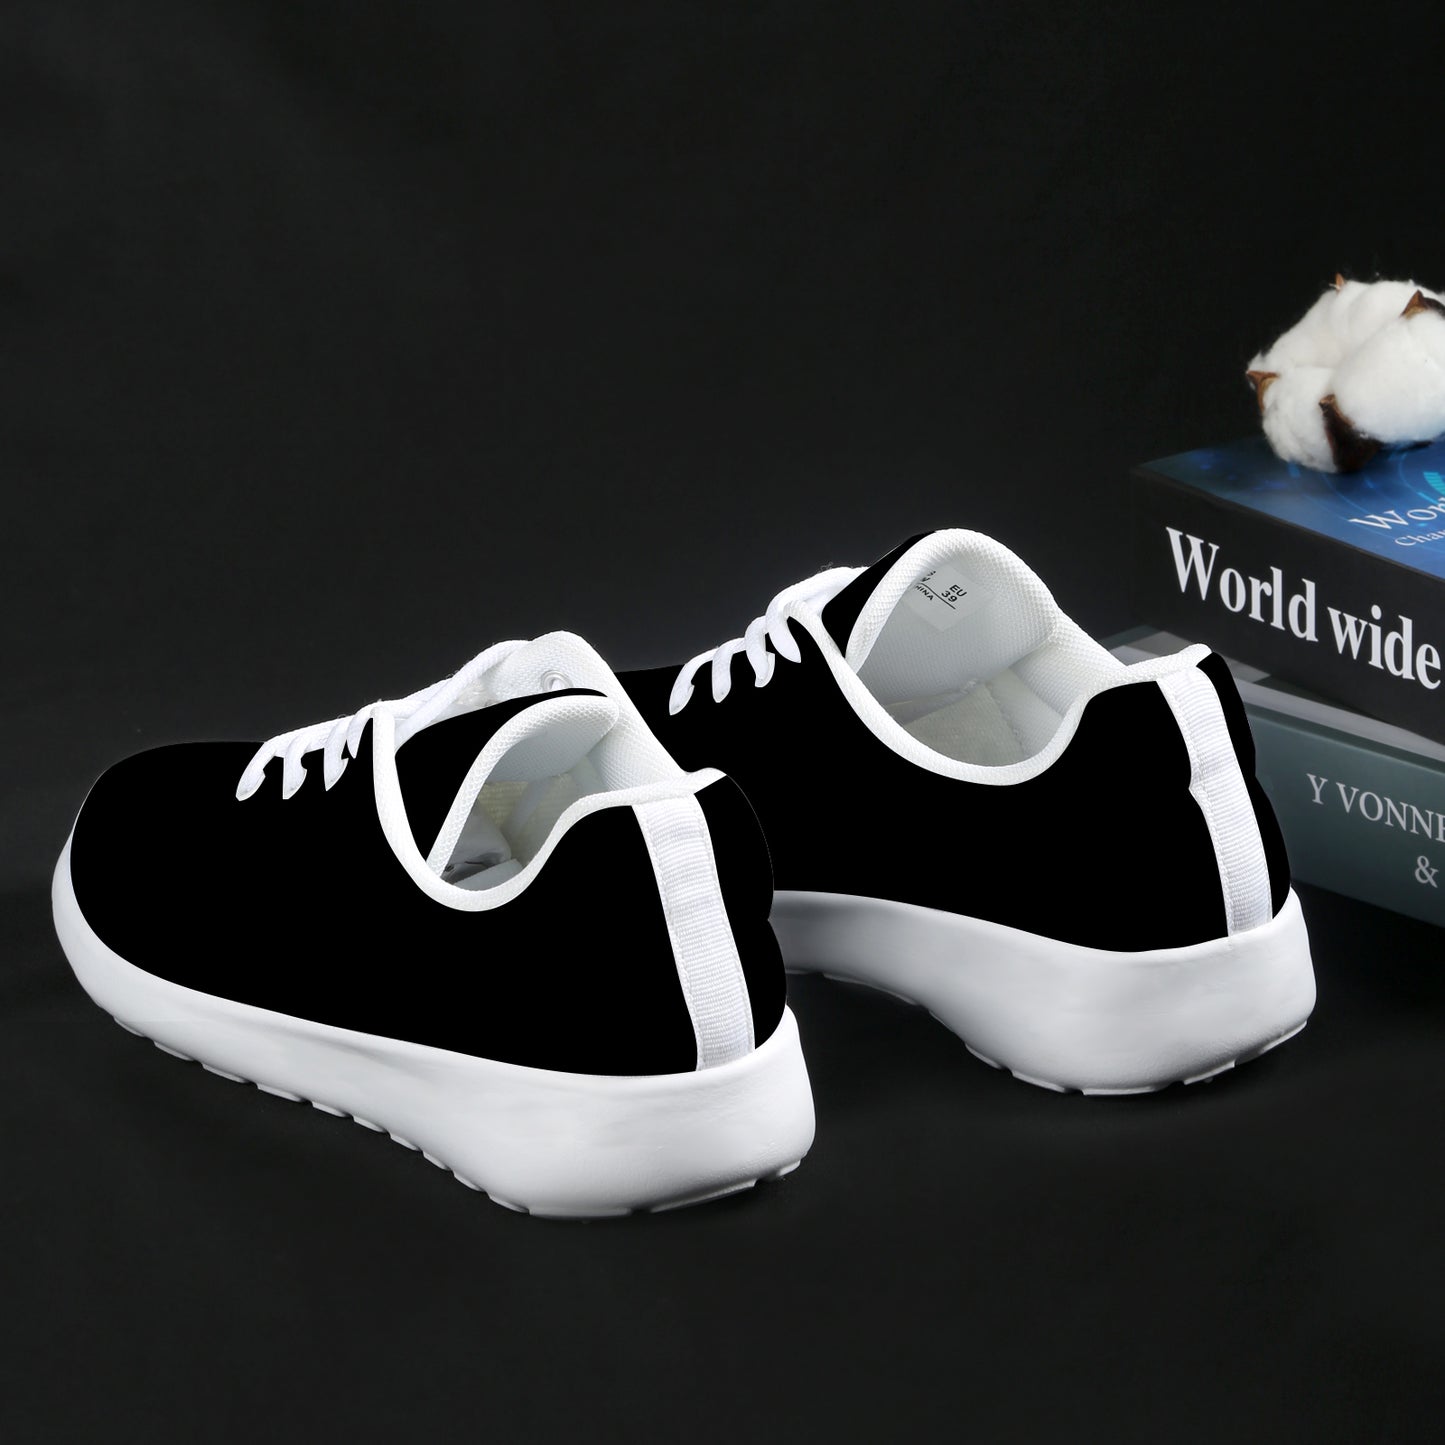 Men's Athletic Shoes - Classic Black